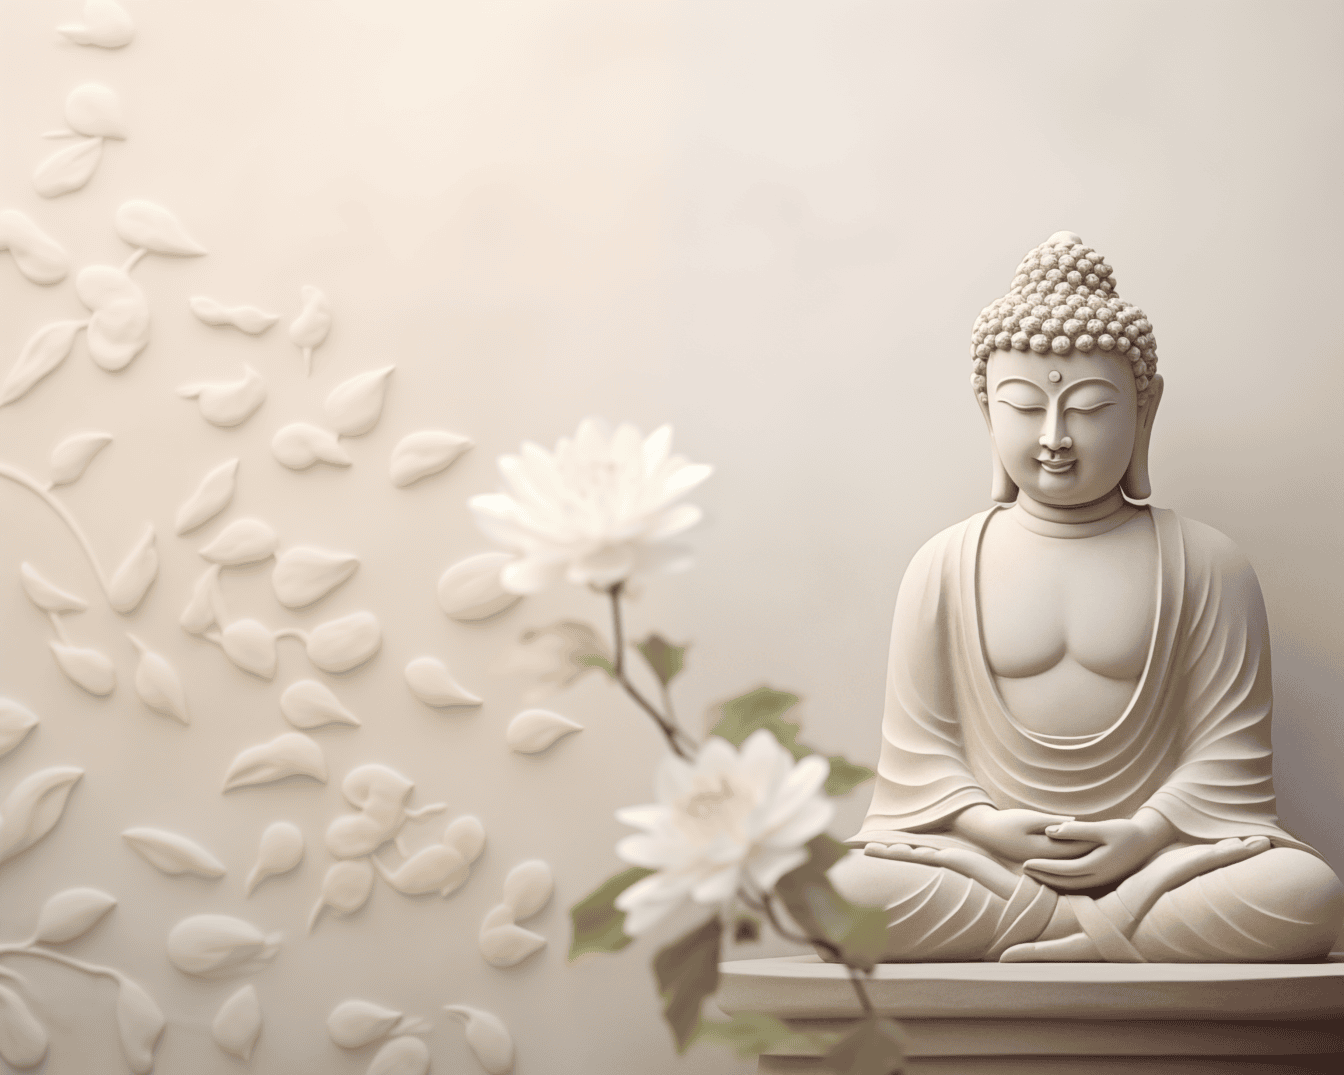 Statue eines Buddha in spiritueller transzendentaler Meditation im Lotussitz sitzend